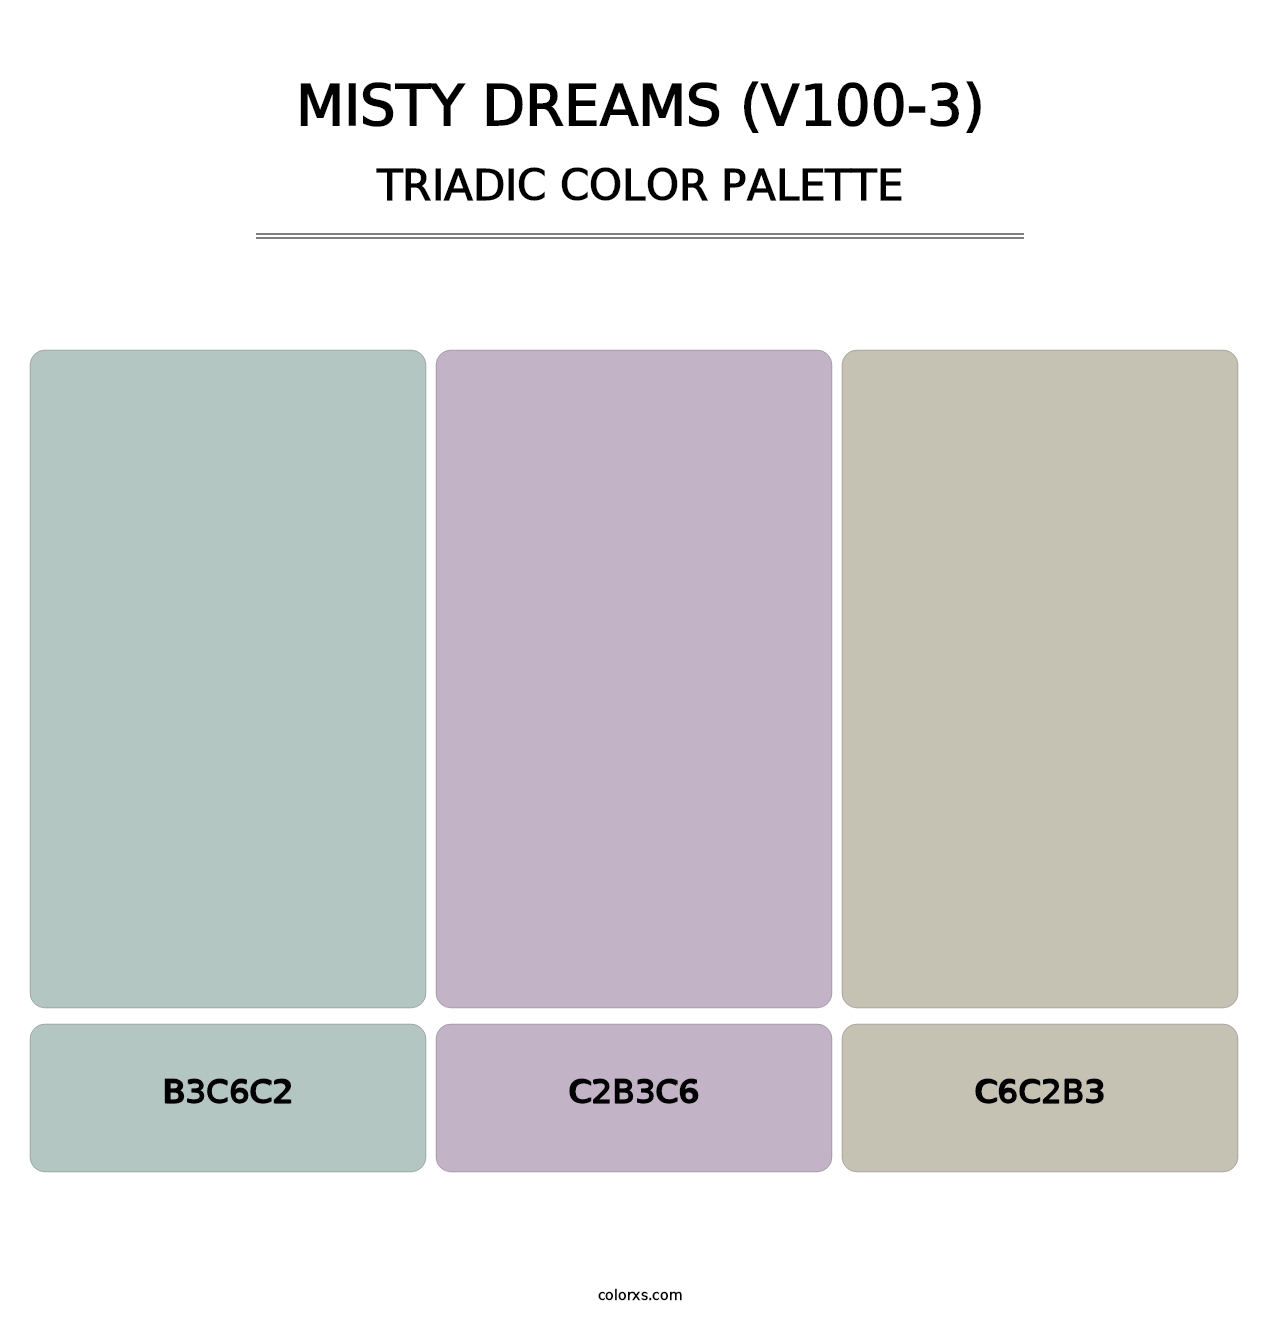 Misty Dreams (V100-3) - Triadic Color Palette